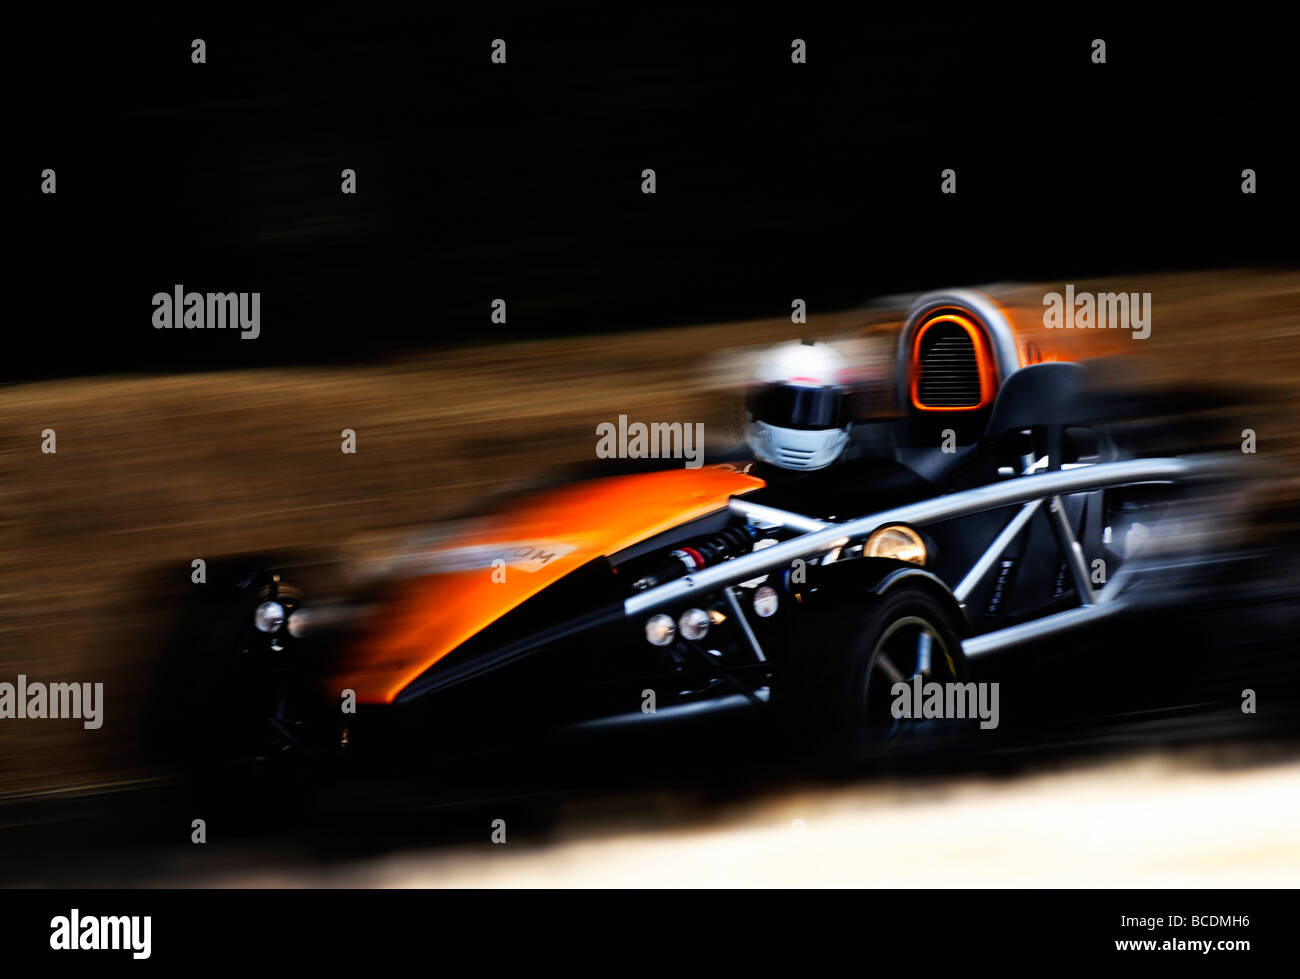 Formula one racing car Stock Photo